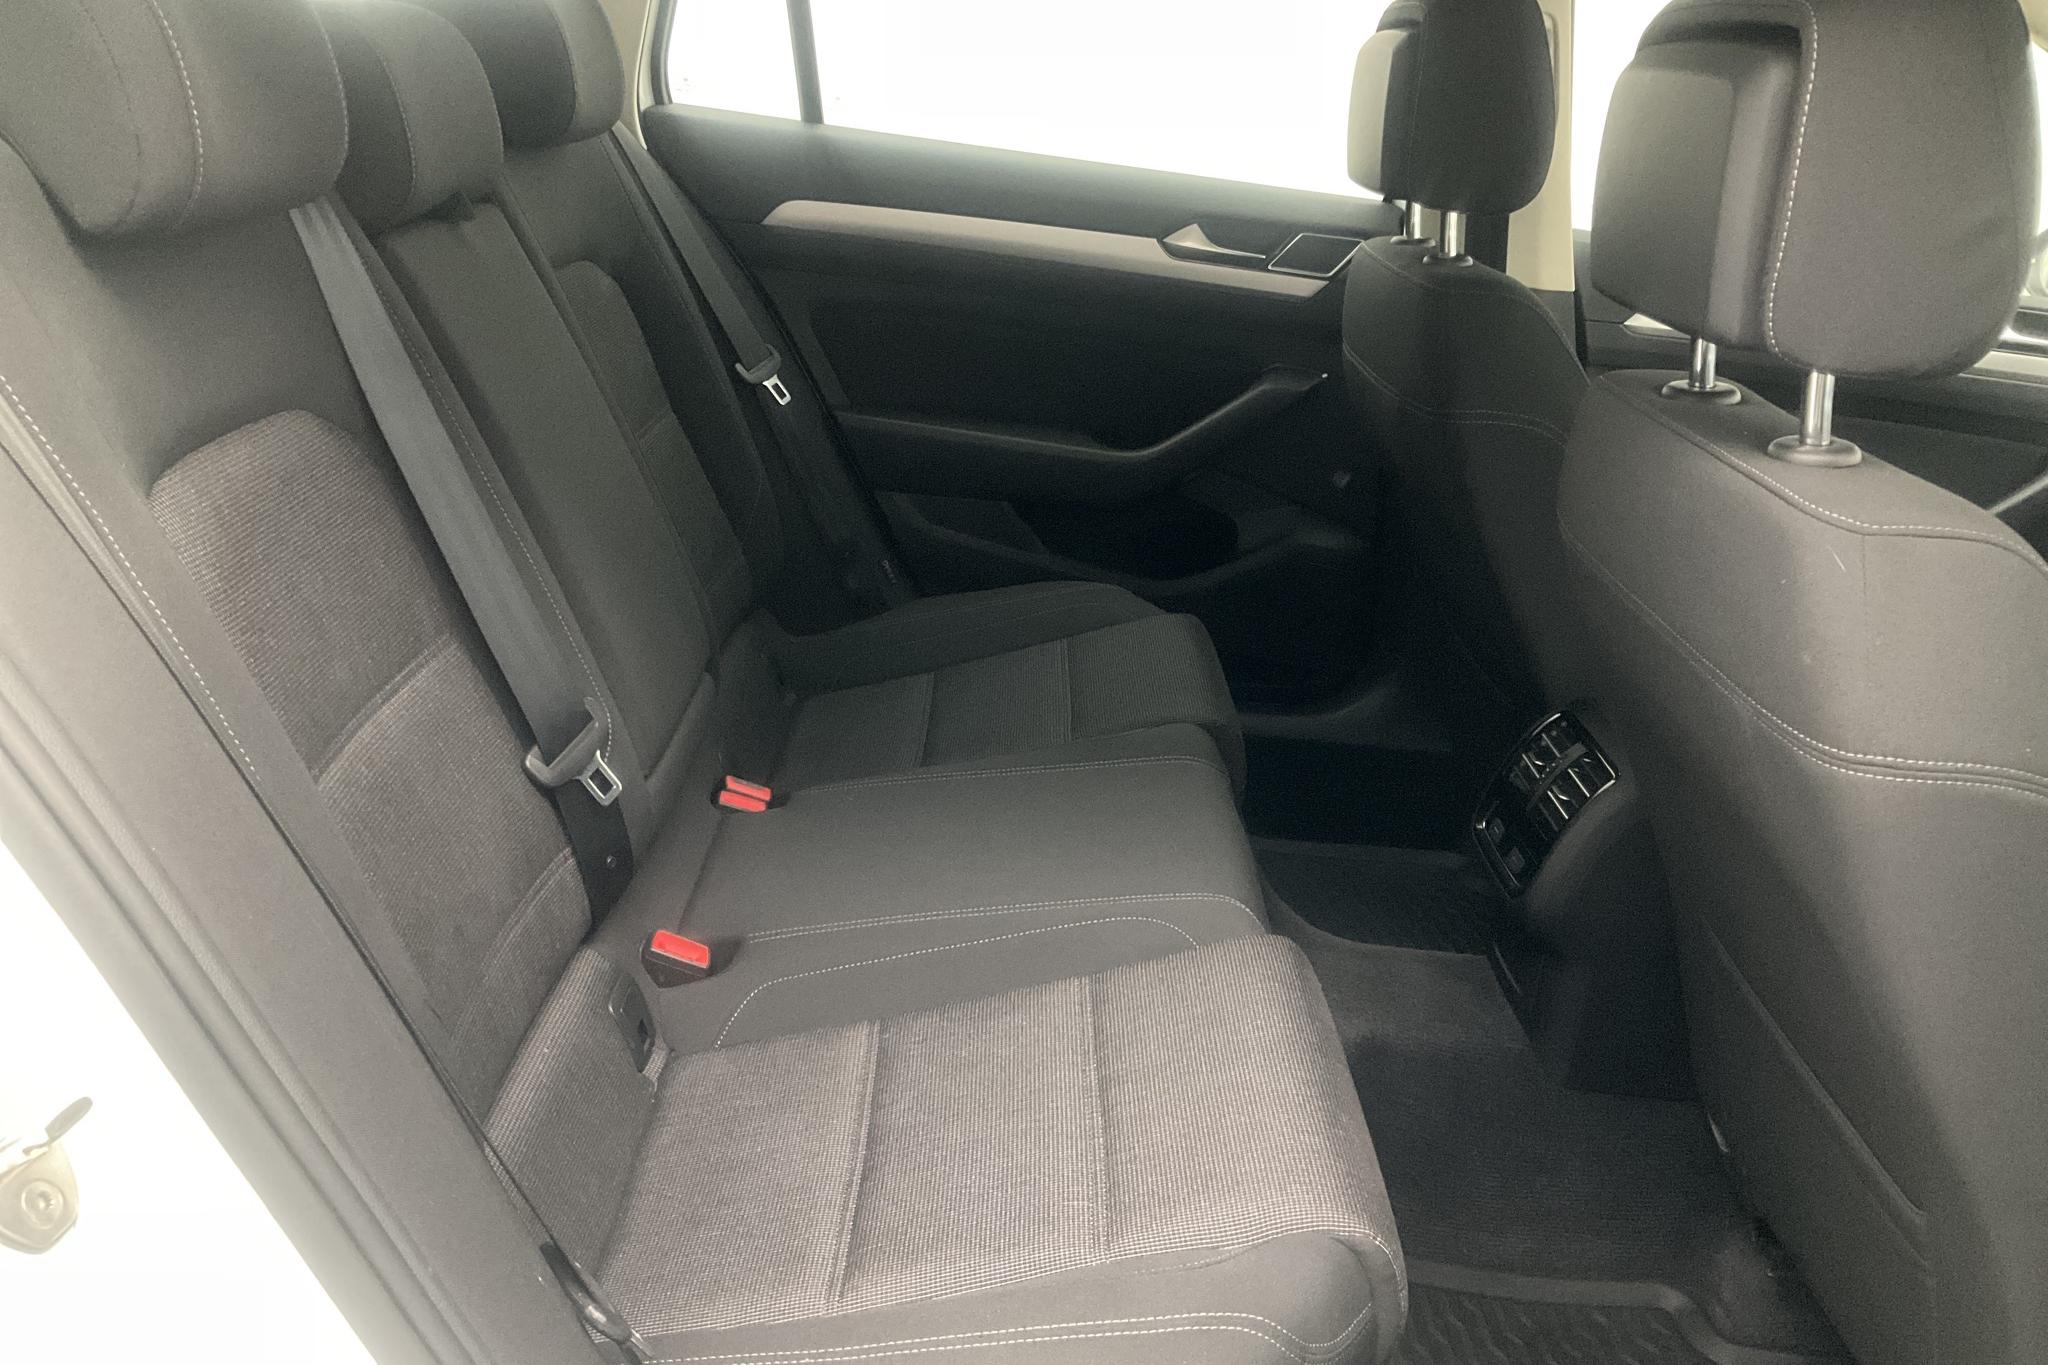 VW Passat 2.0 TDI Sportscombi (150hk) - 128 030 km - Manual - white - 2018